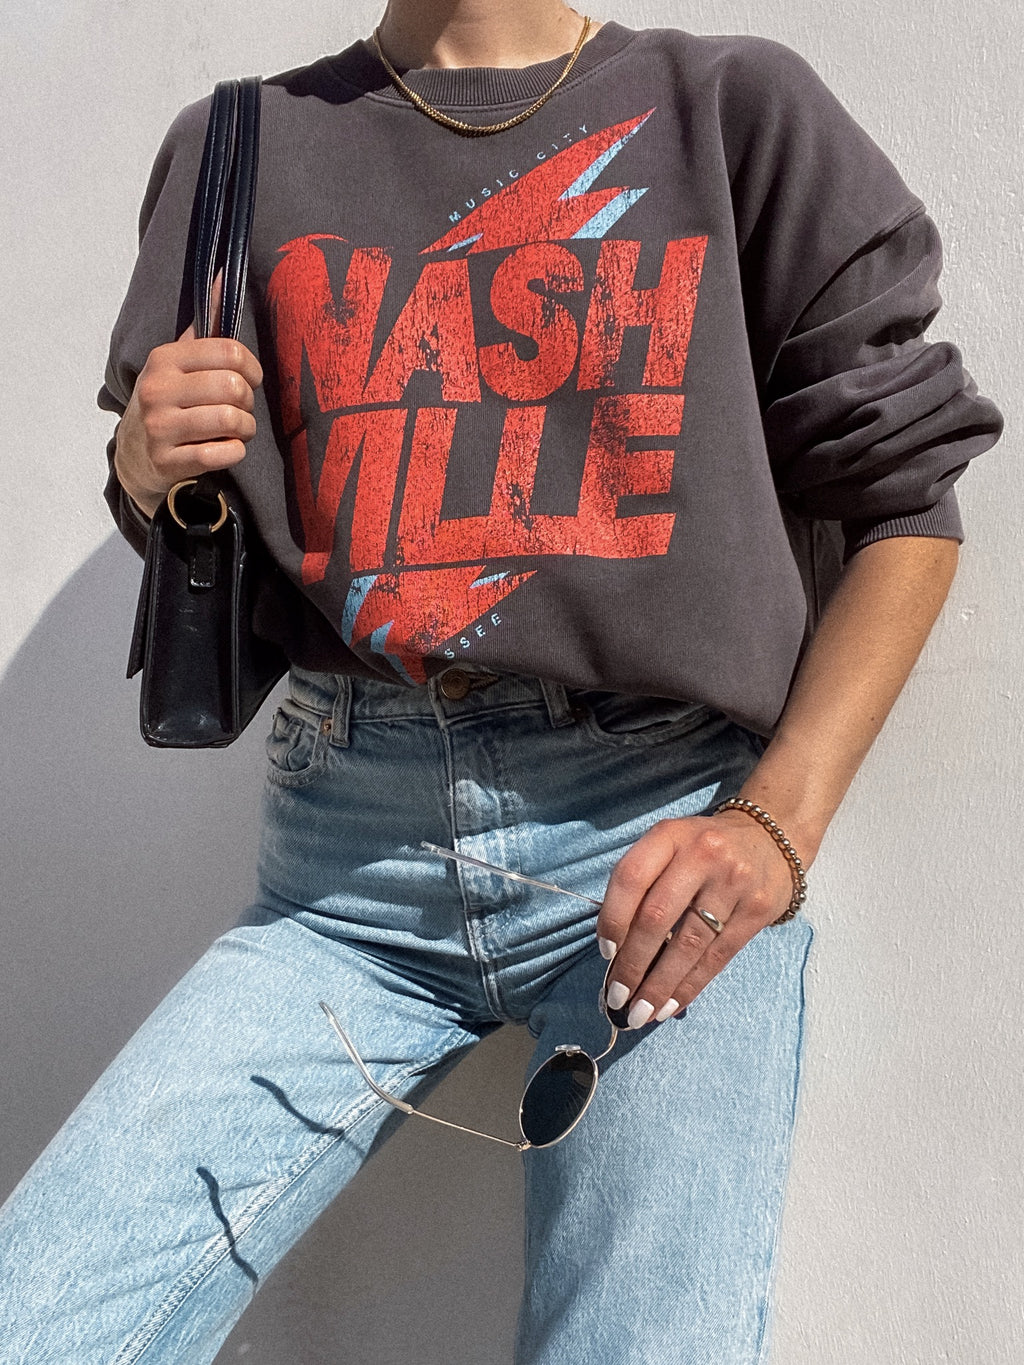 Nashville Graphic Sweatshirt - Stitch And Feather